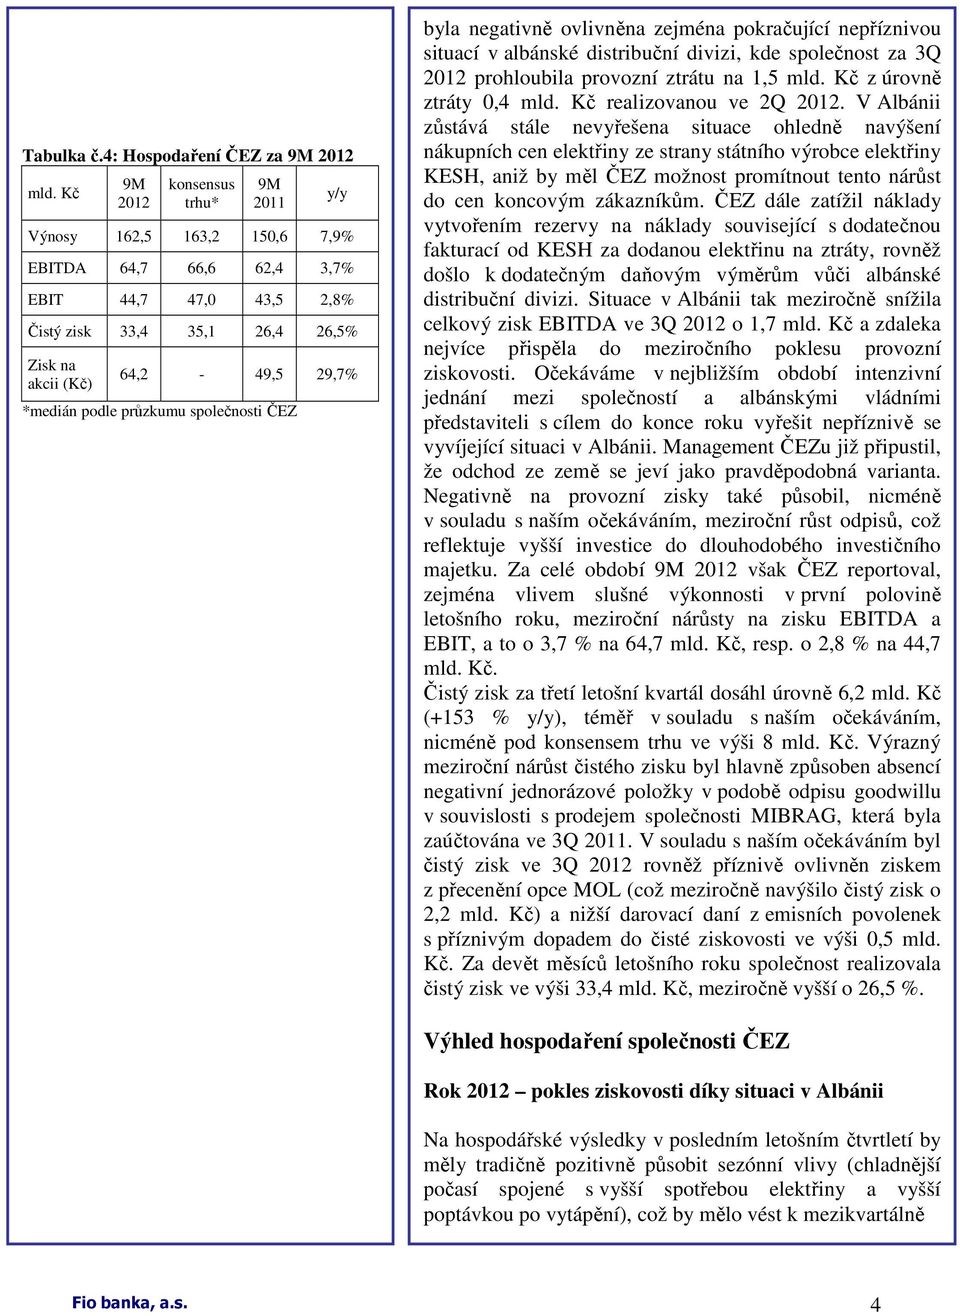 podle průzkumu společnosti ČEZ byla negativně ovlivněna zejména pokračující nepříznivou situací v albánské distribuční divizi, kde společnost za 3Q 2012 prohloubila provozní ztrátu na 1,5 mld.